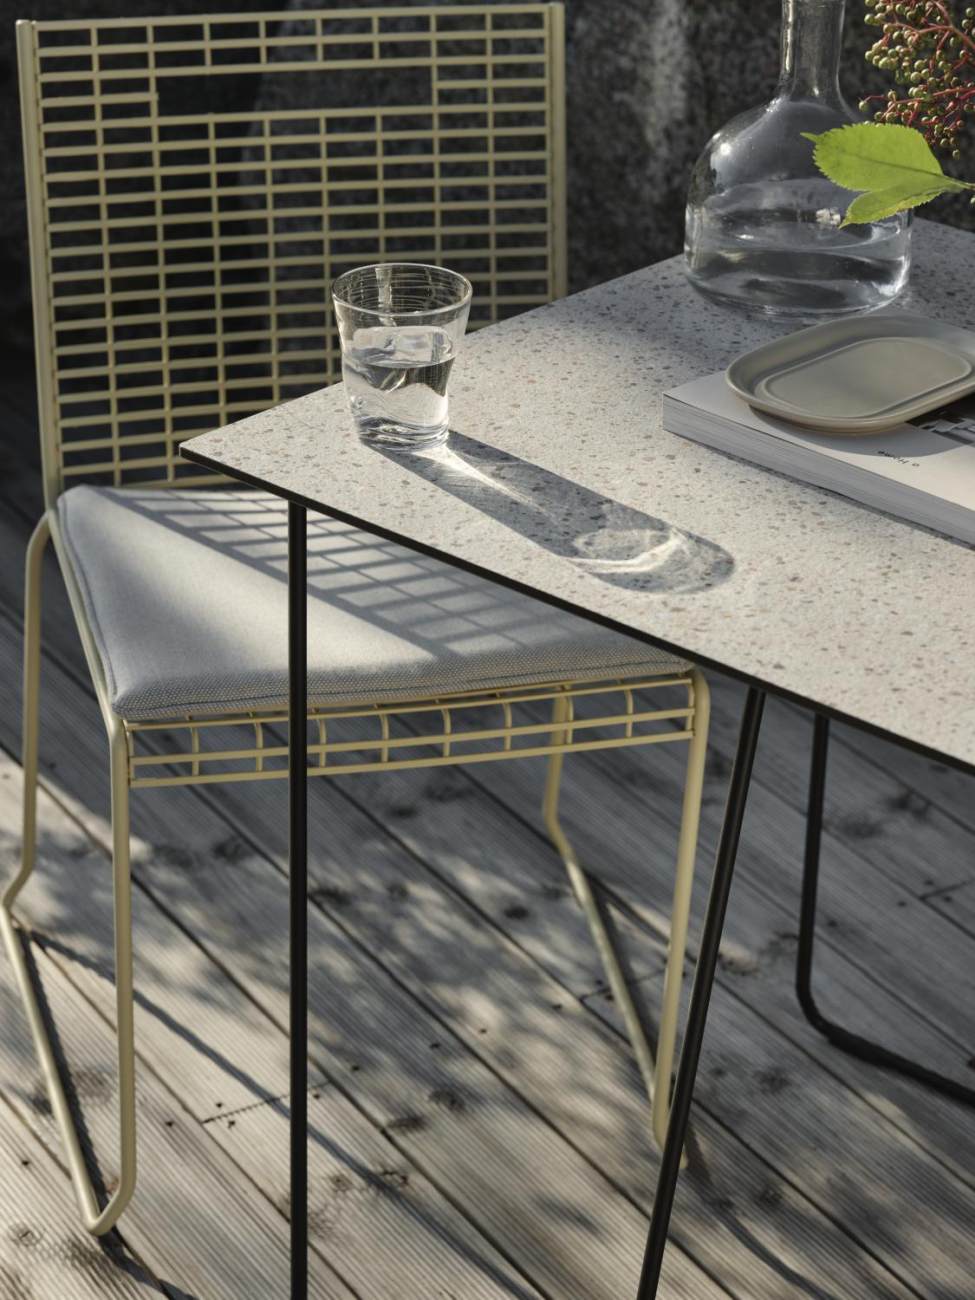 Der Gartenstuhl Sinarp überzeugt mit seinem modernen Design. Gefertigt wurde er aus Metall, welches einen gelben Farbton besitzt. Das Gestell ist auch aus Metall und hat eine gelbe Farbe. Die Sitzhöhe des Stuhls beträgt 44 cm.